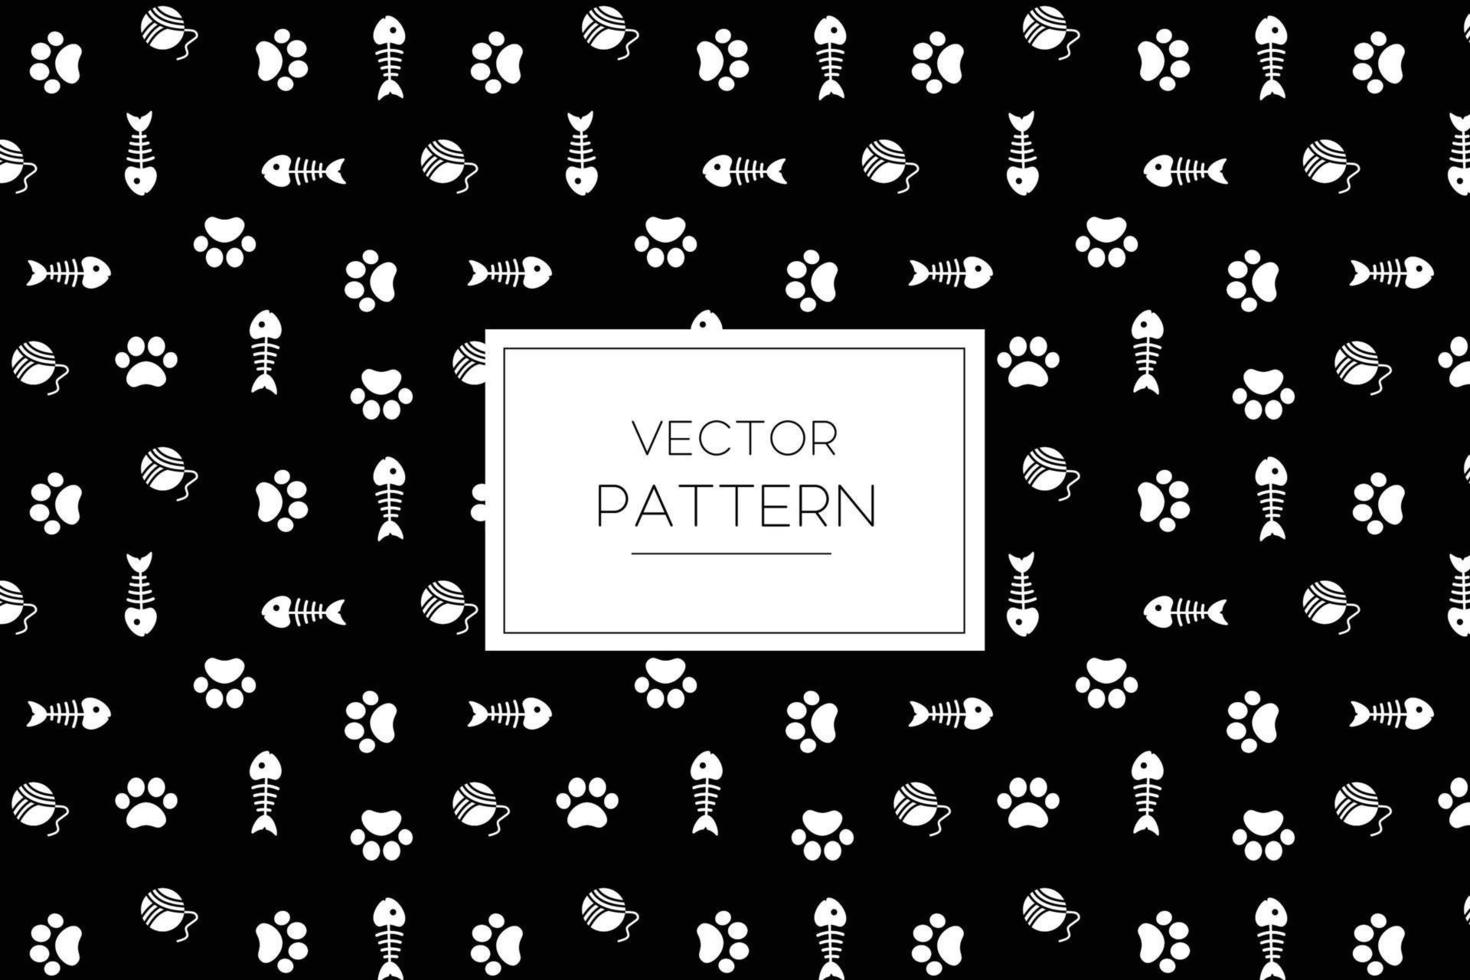 símbolo de ícone de pegada branca de pata de gato, espinha de peixe e bola de fio vector design bonito padrão em um fundo preto